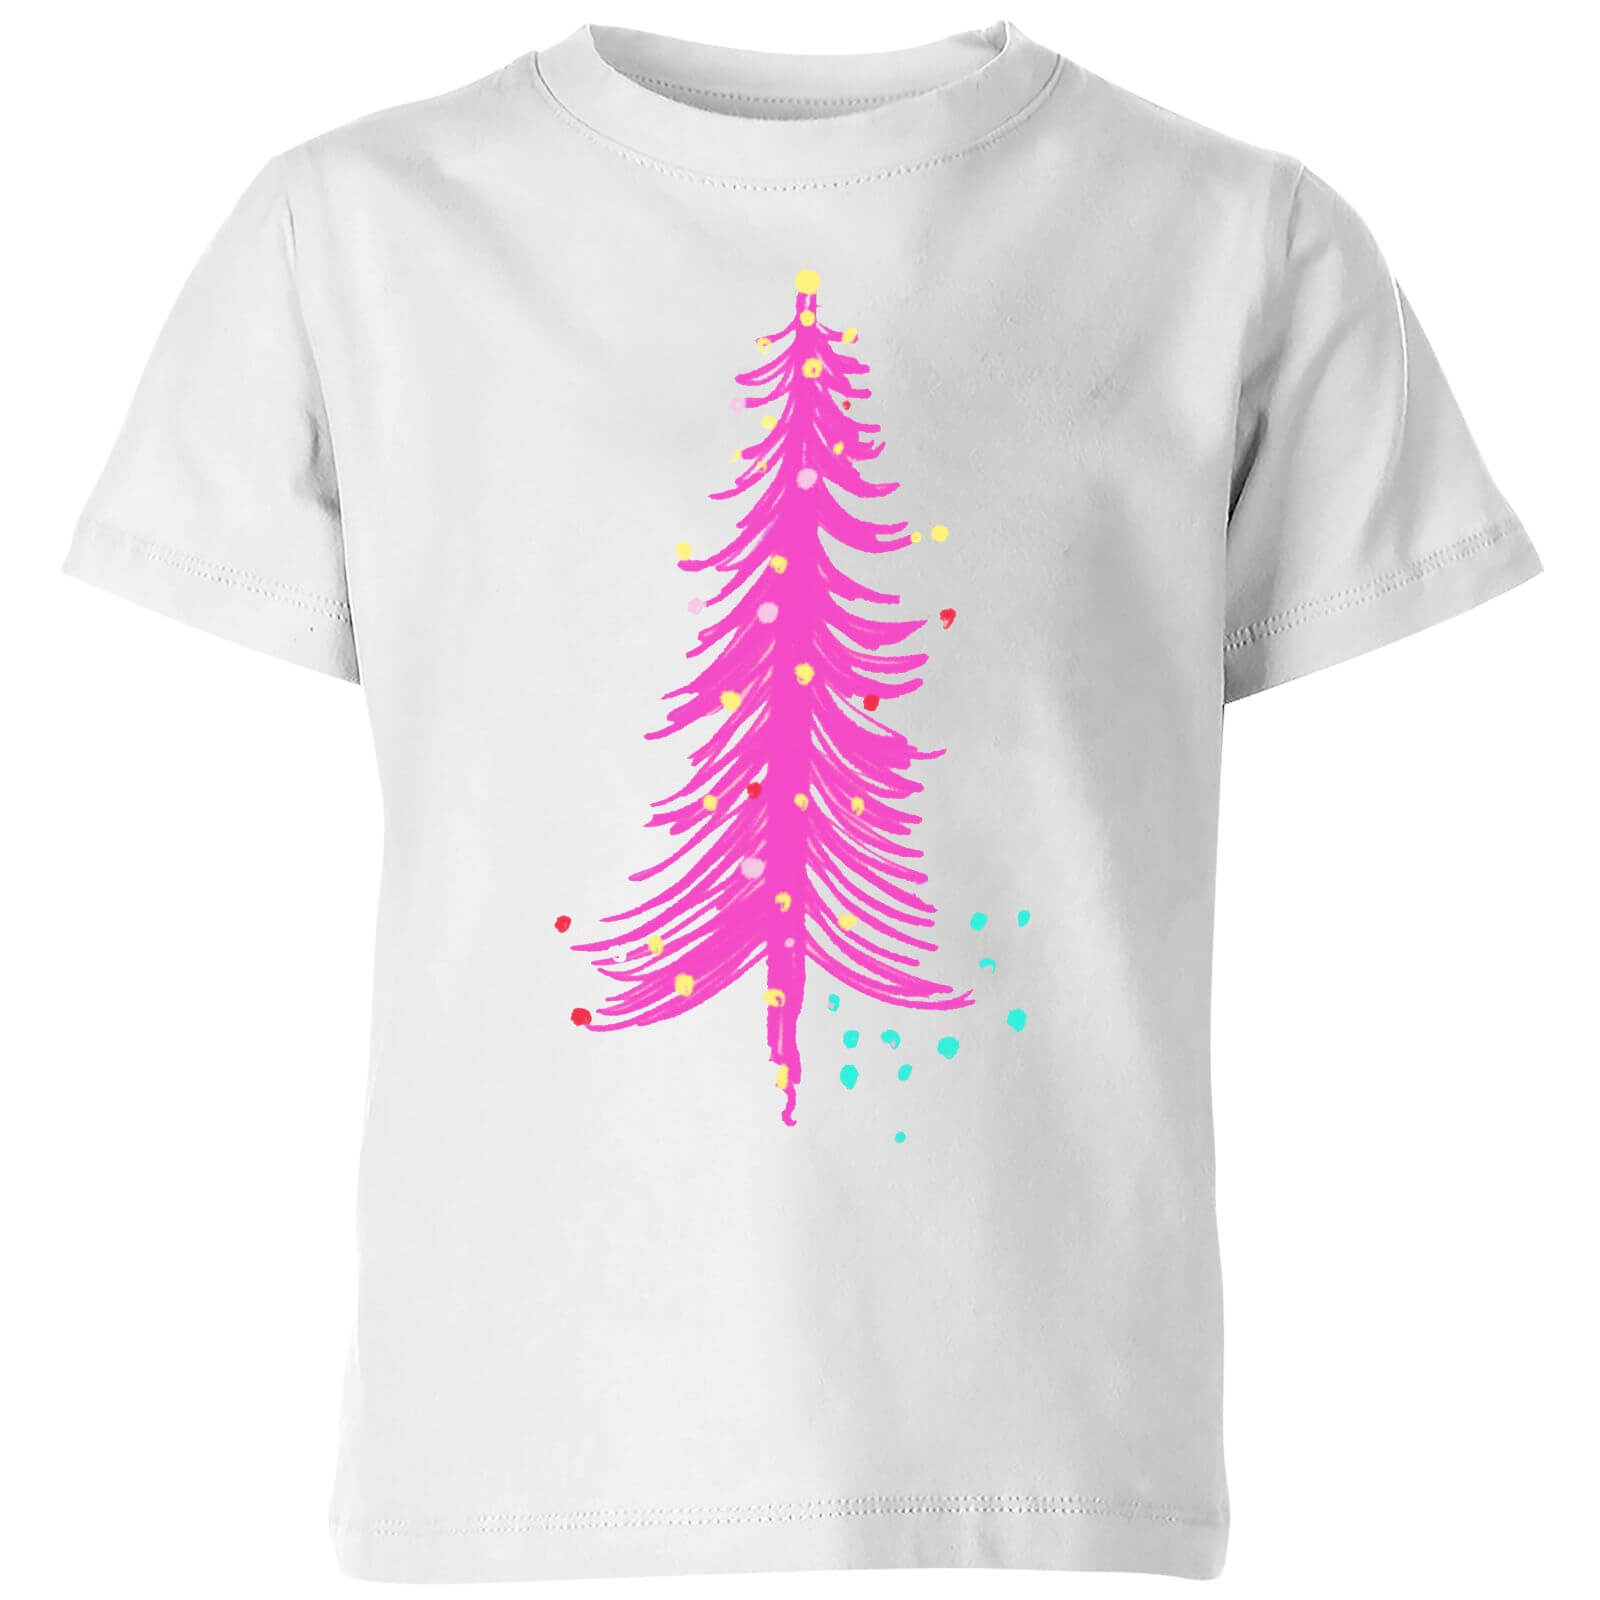 Pink Christmas Tree Kids' T-Shirt - White - 3-4 Years - White